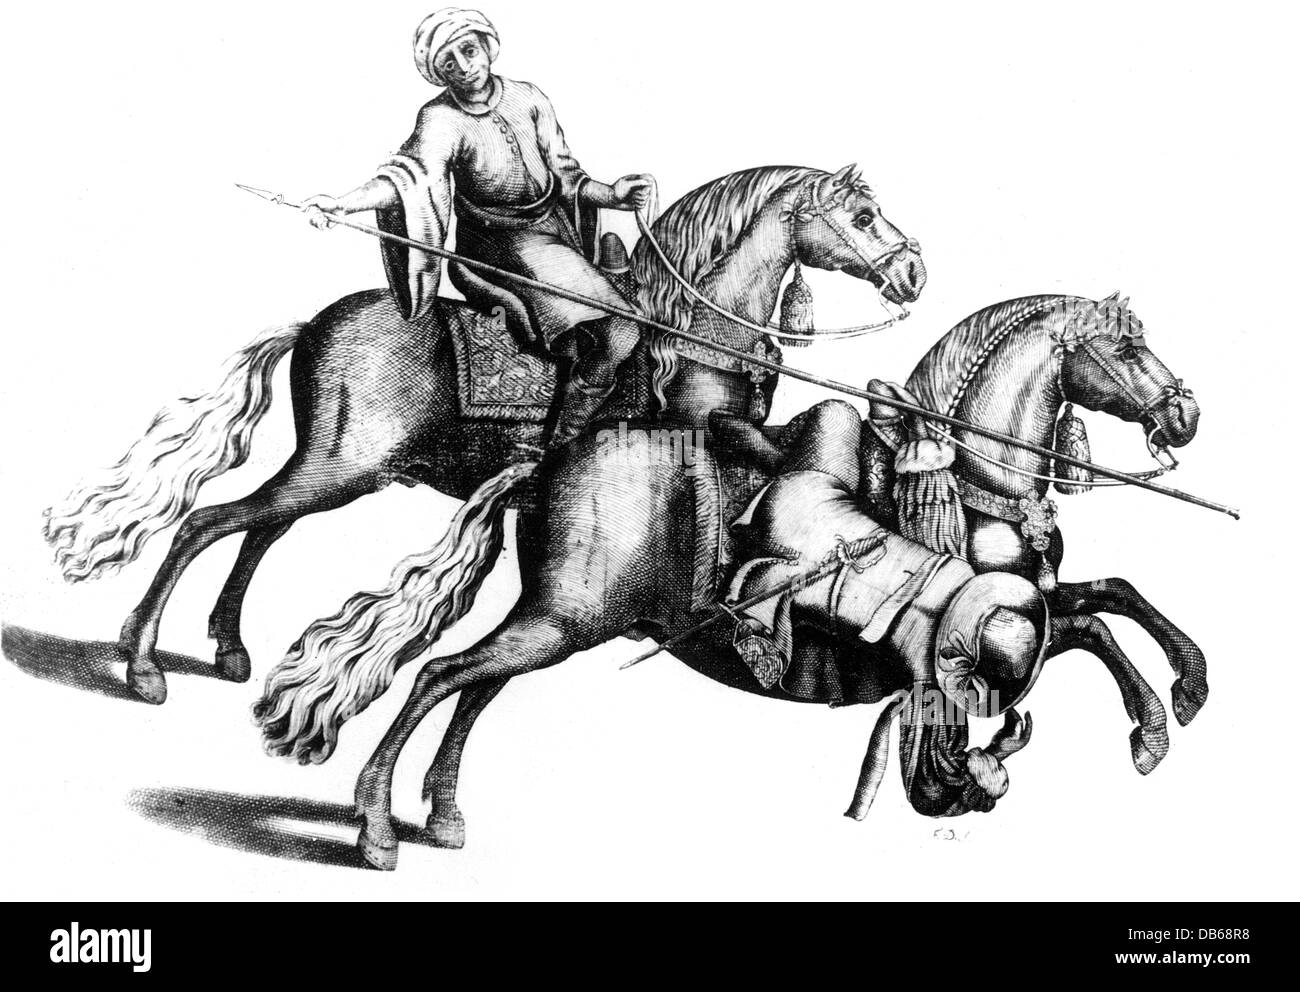 Militär, Kavallerie, Fähigkeit zu Pferd, Reiter Vermeidung einer Lanze Schub, Kupferstich, von "Arte da Cavalleria', von Antonio Galvao, Lisboa 1678, Artist's Urheberrecht nicht geklärt zu werden. Stockfoto